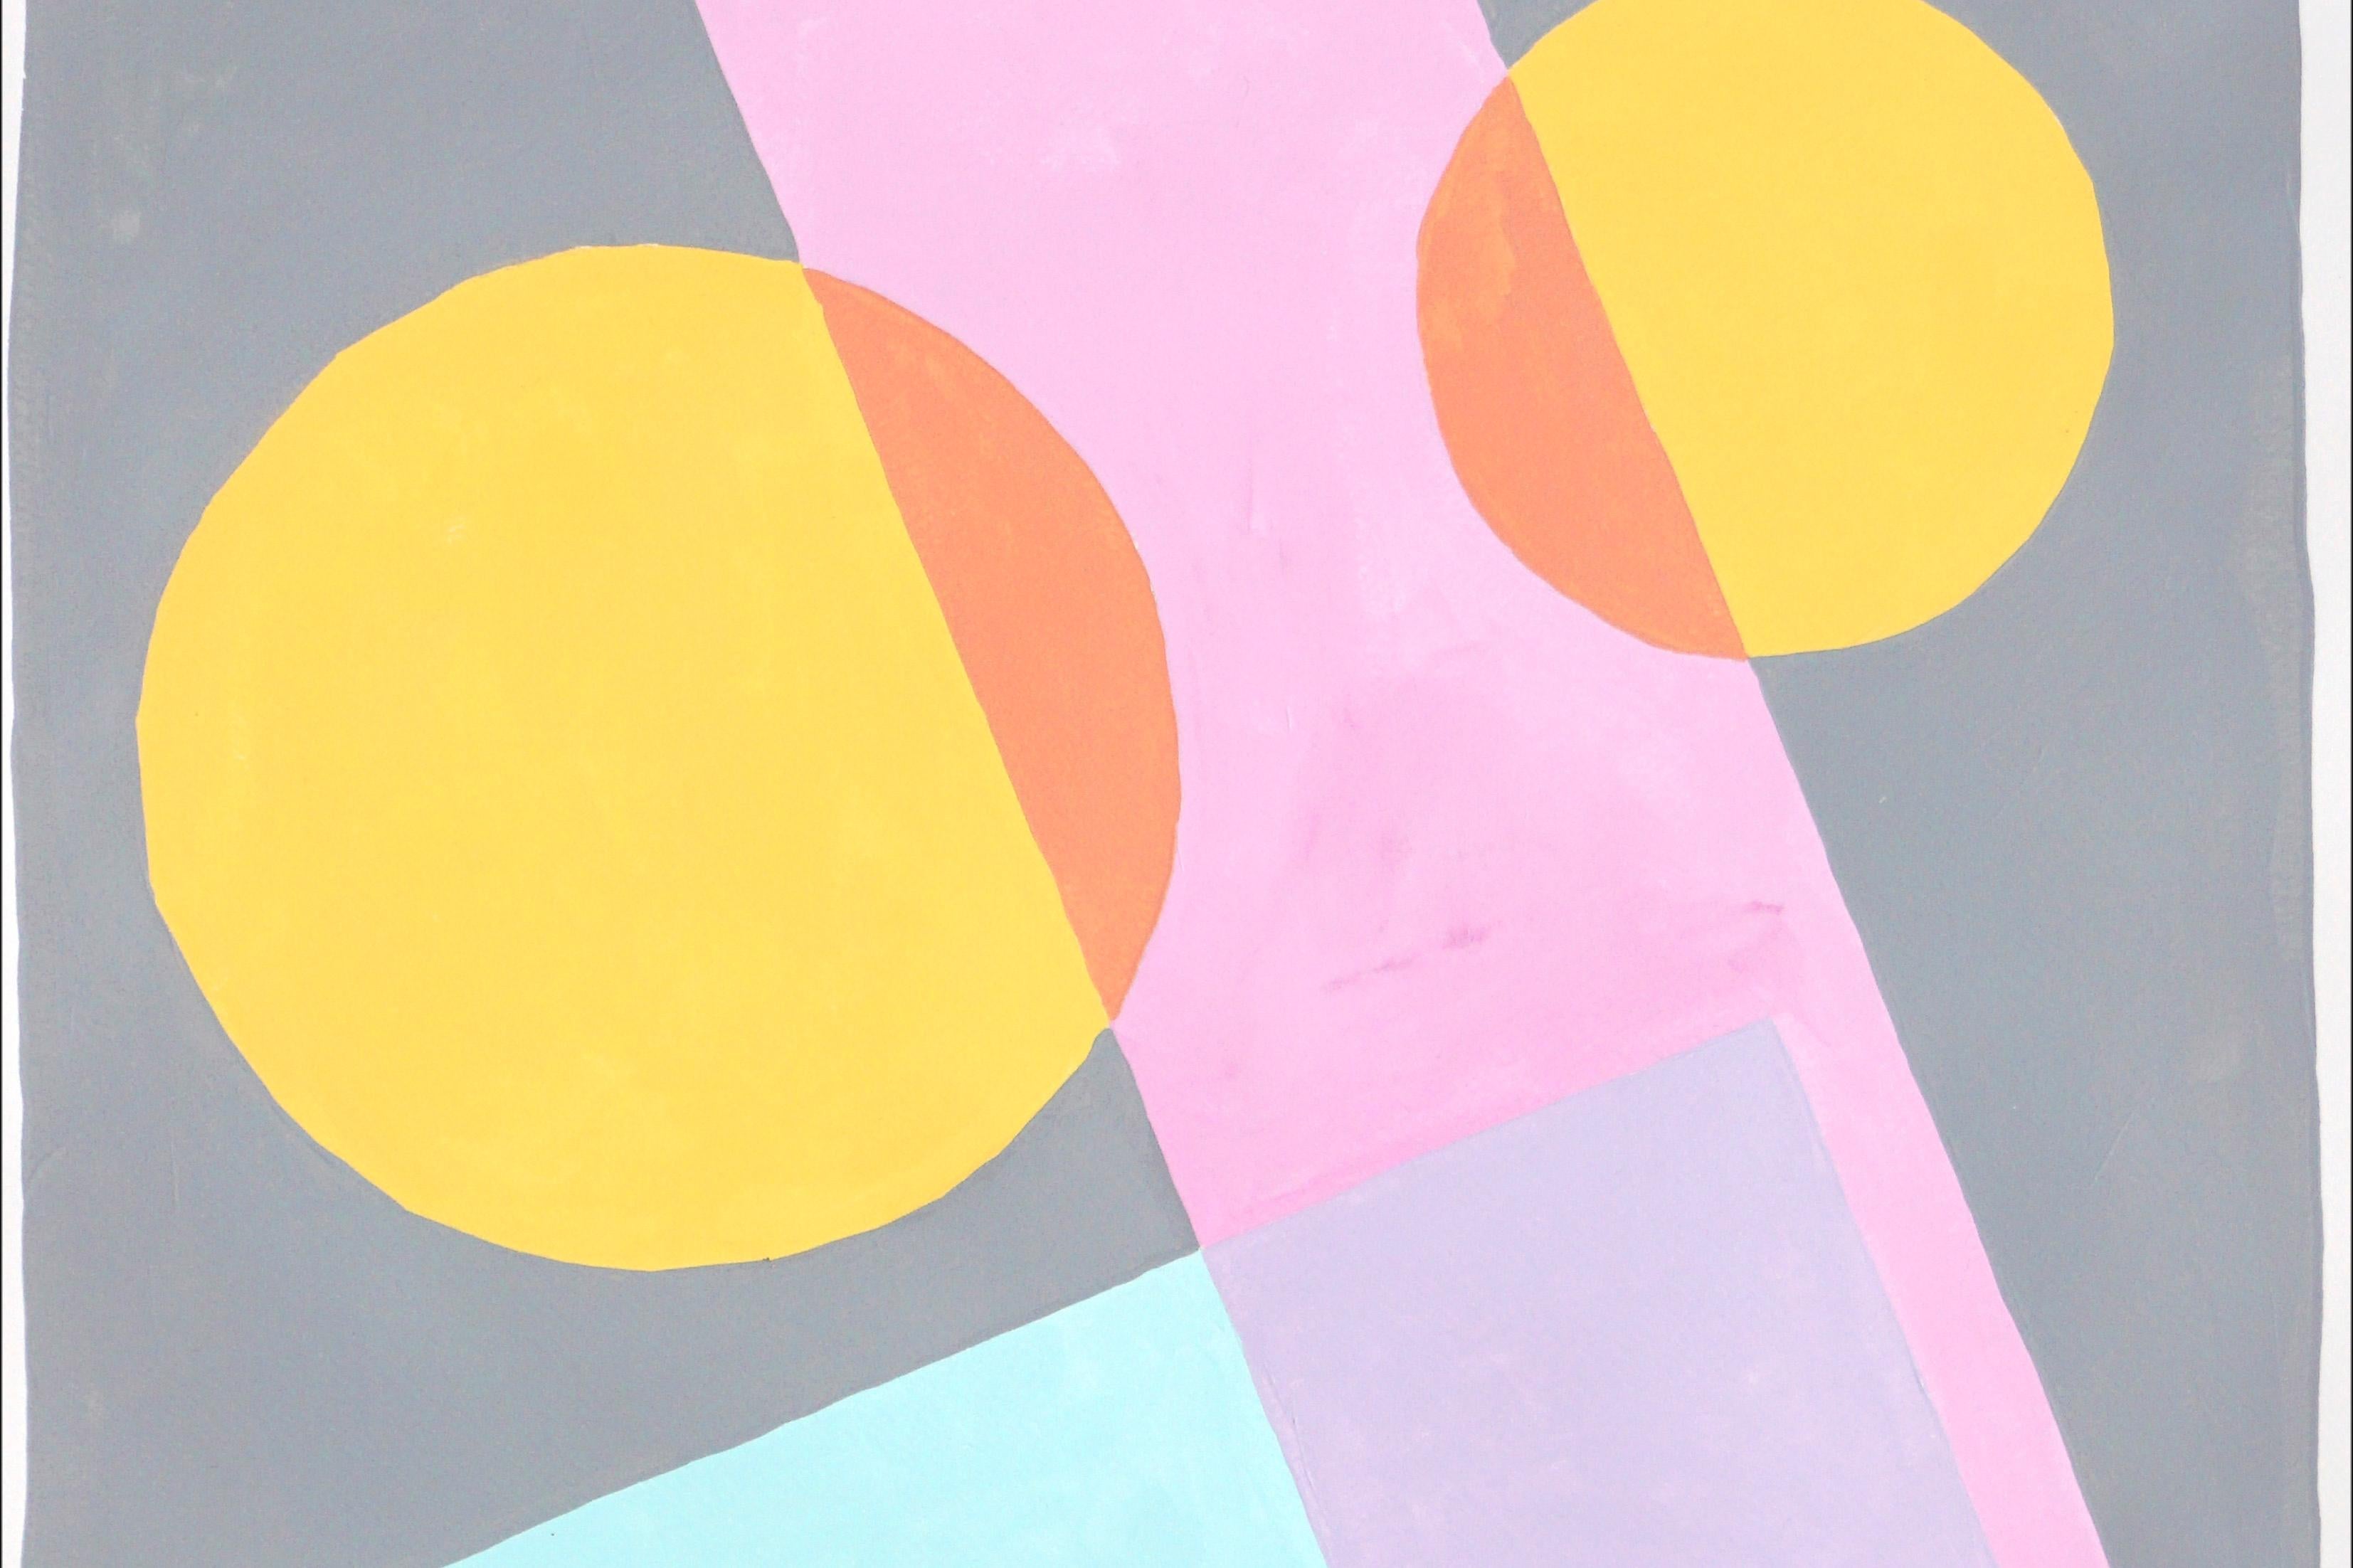 Formes constructivistes au pastel, peinture géométrique aux tons doux, bleu, rose, jaune - Beige Abstract Painting par Ryan Rivadeneyra